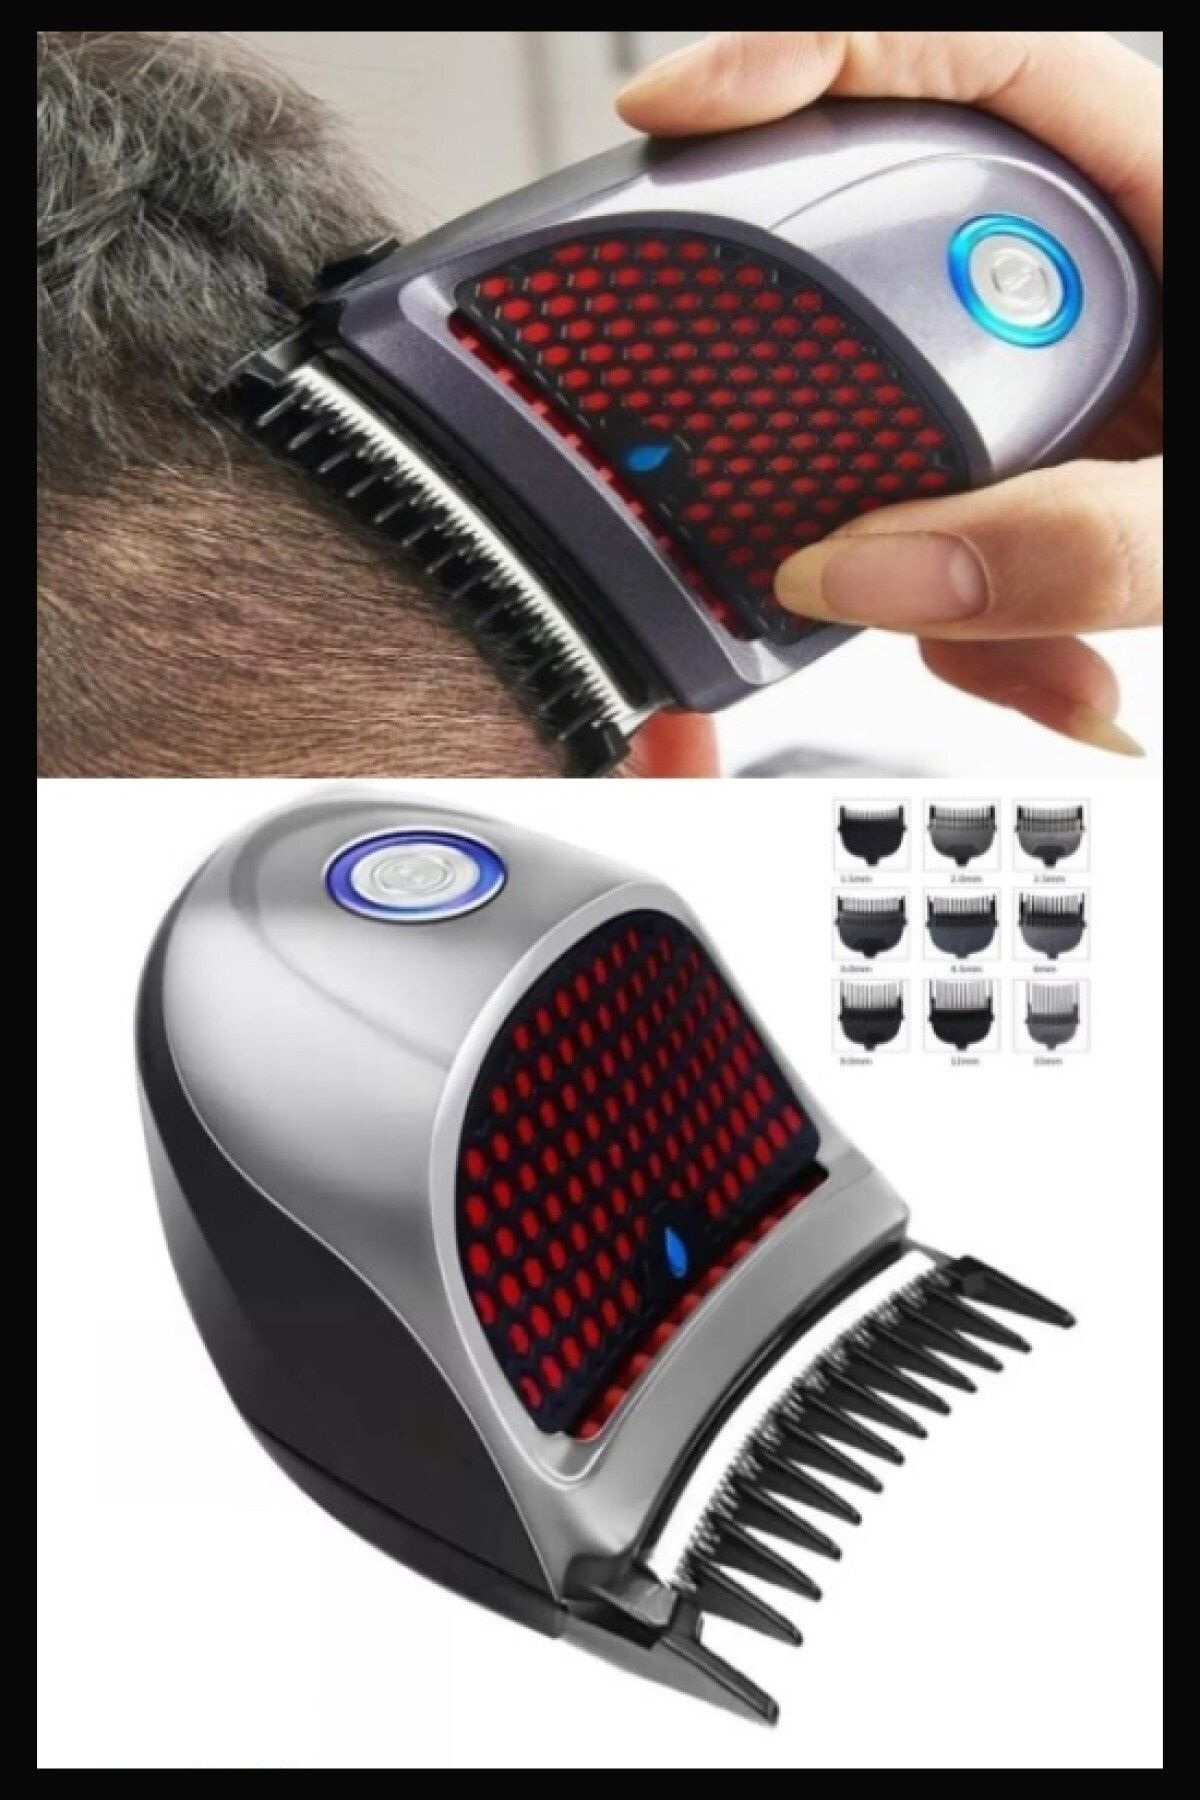 JUDAS Qualis D2 Elektirikli Saç Tıraş Makinesi 9 Kılavuz Tarak